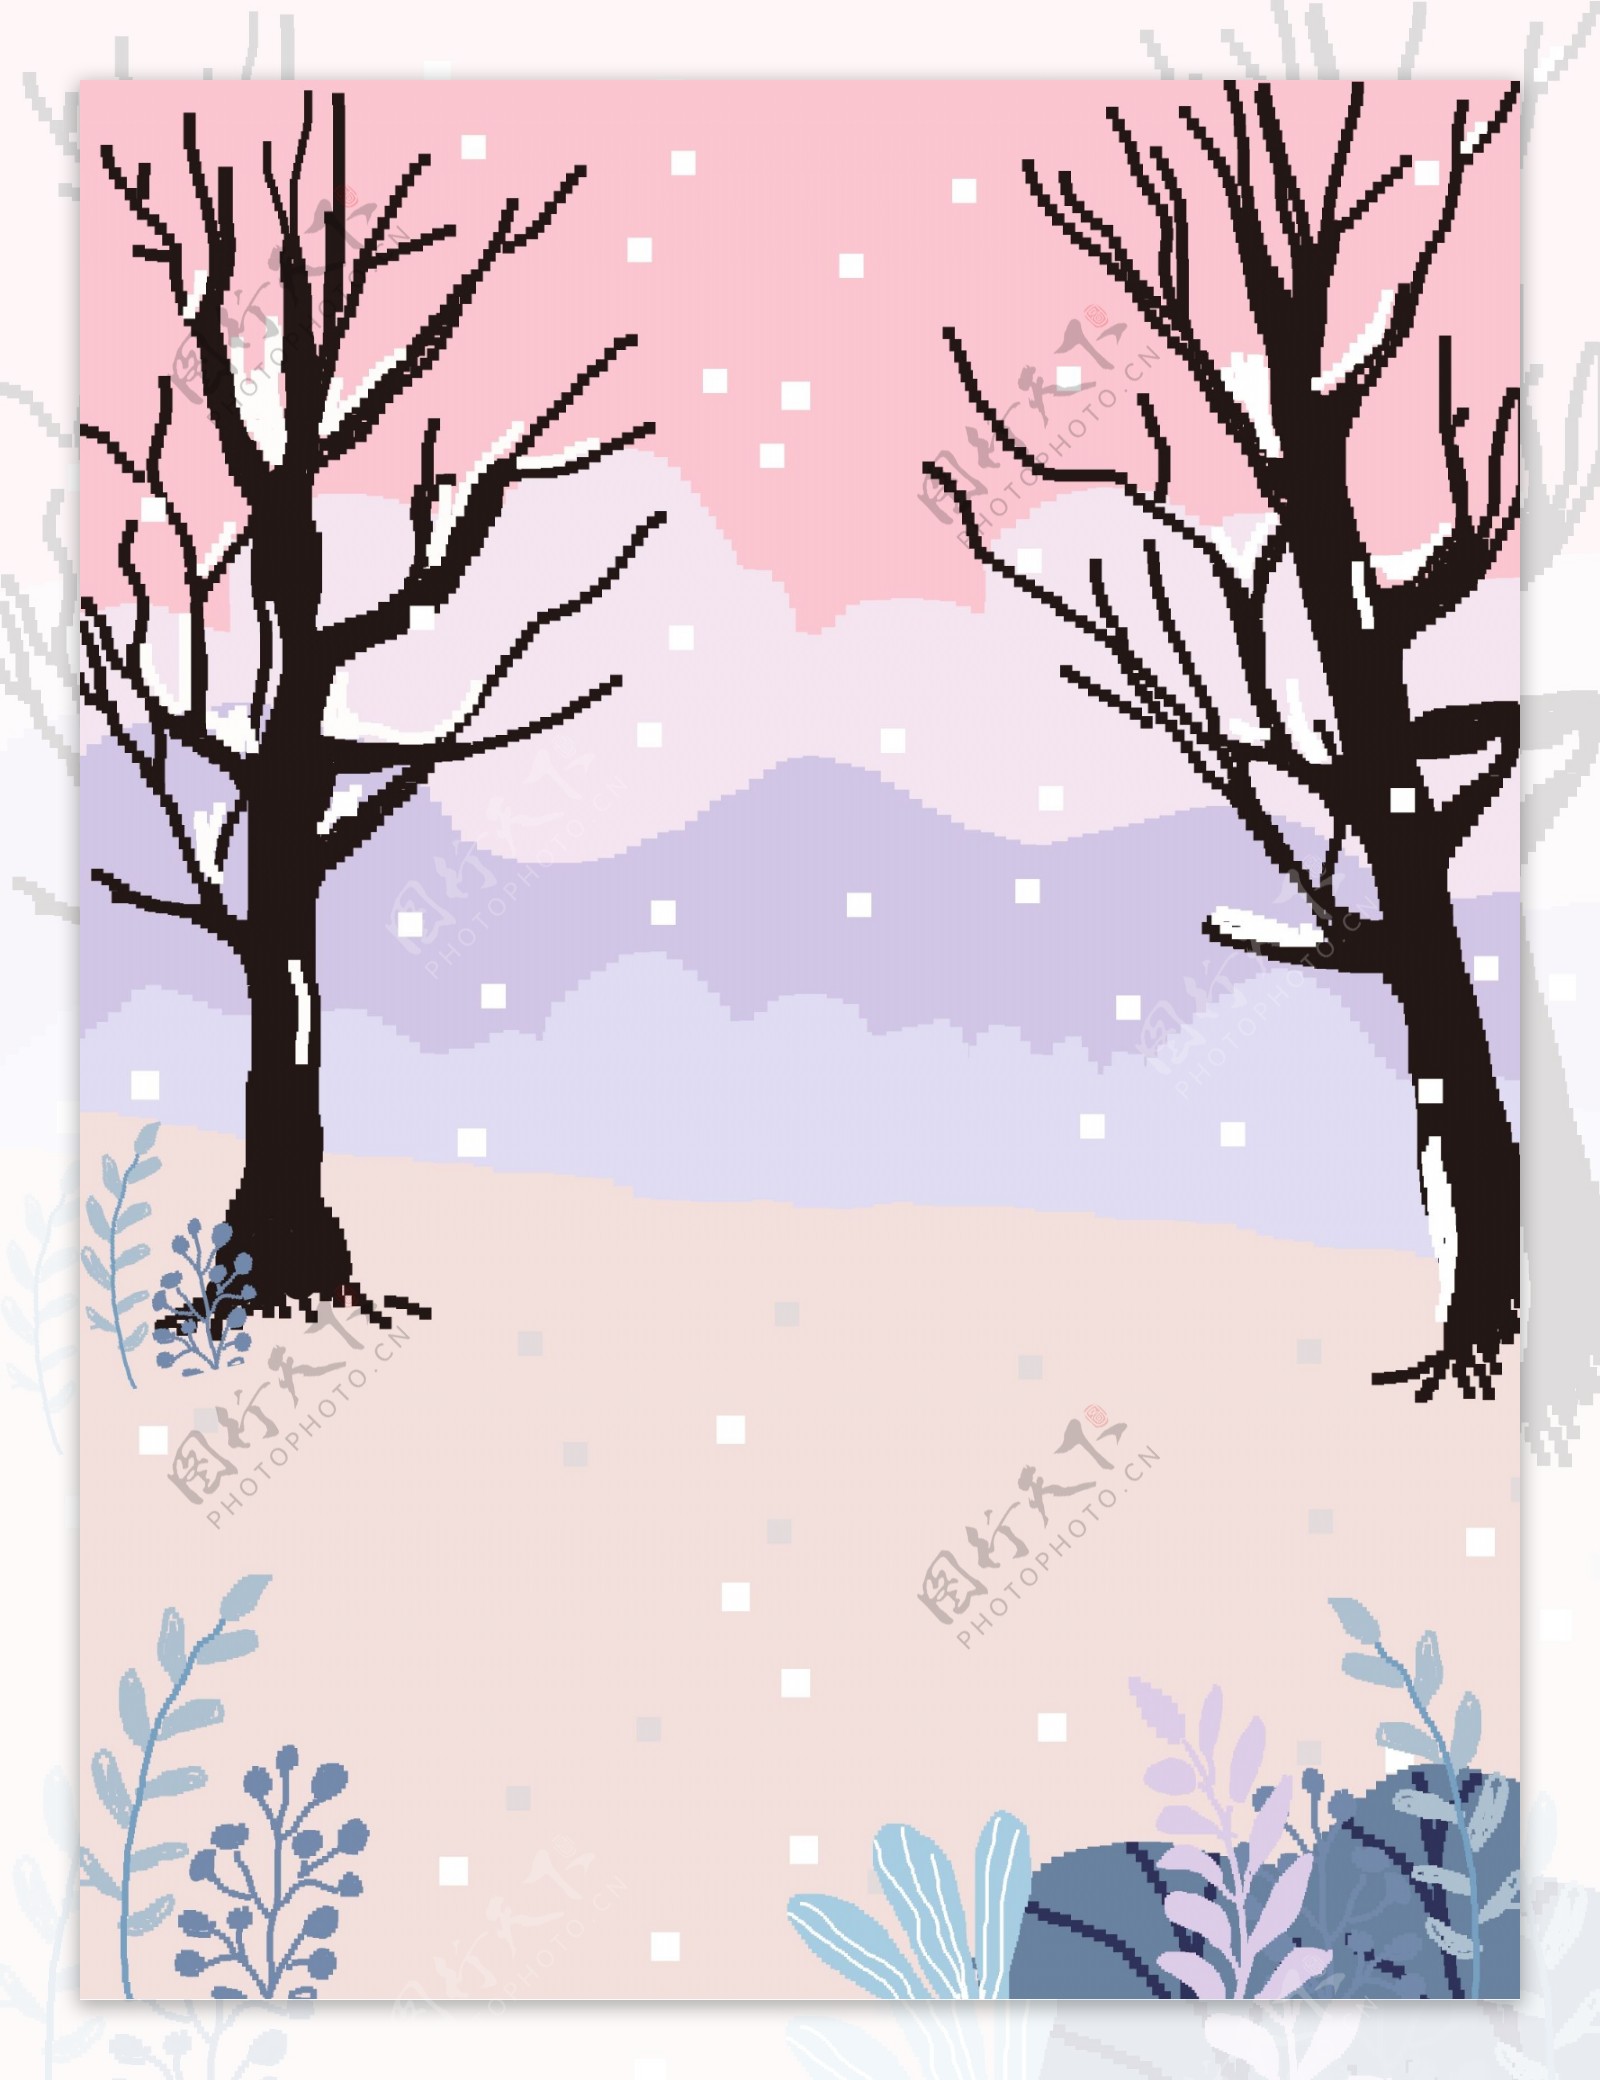 清新彩绘像素风雪地树林背景设计